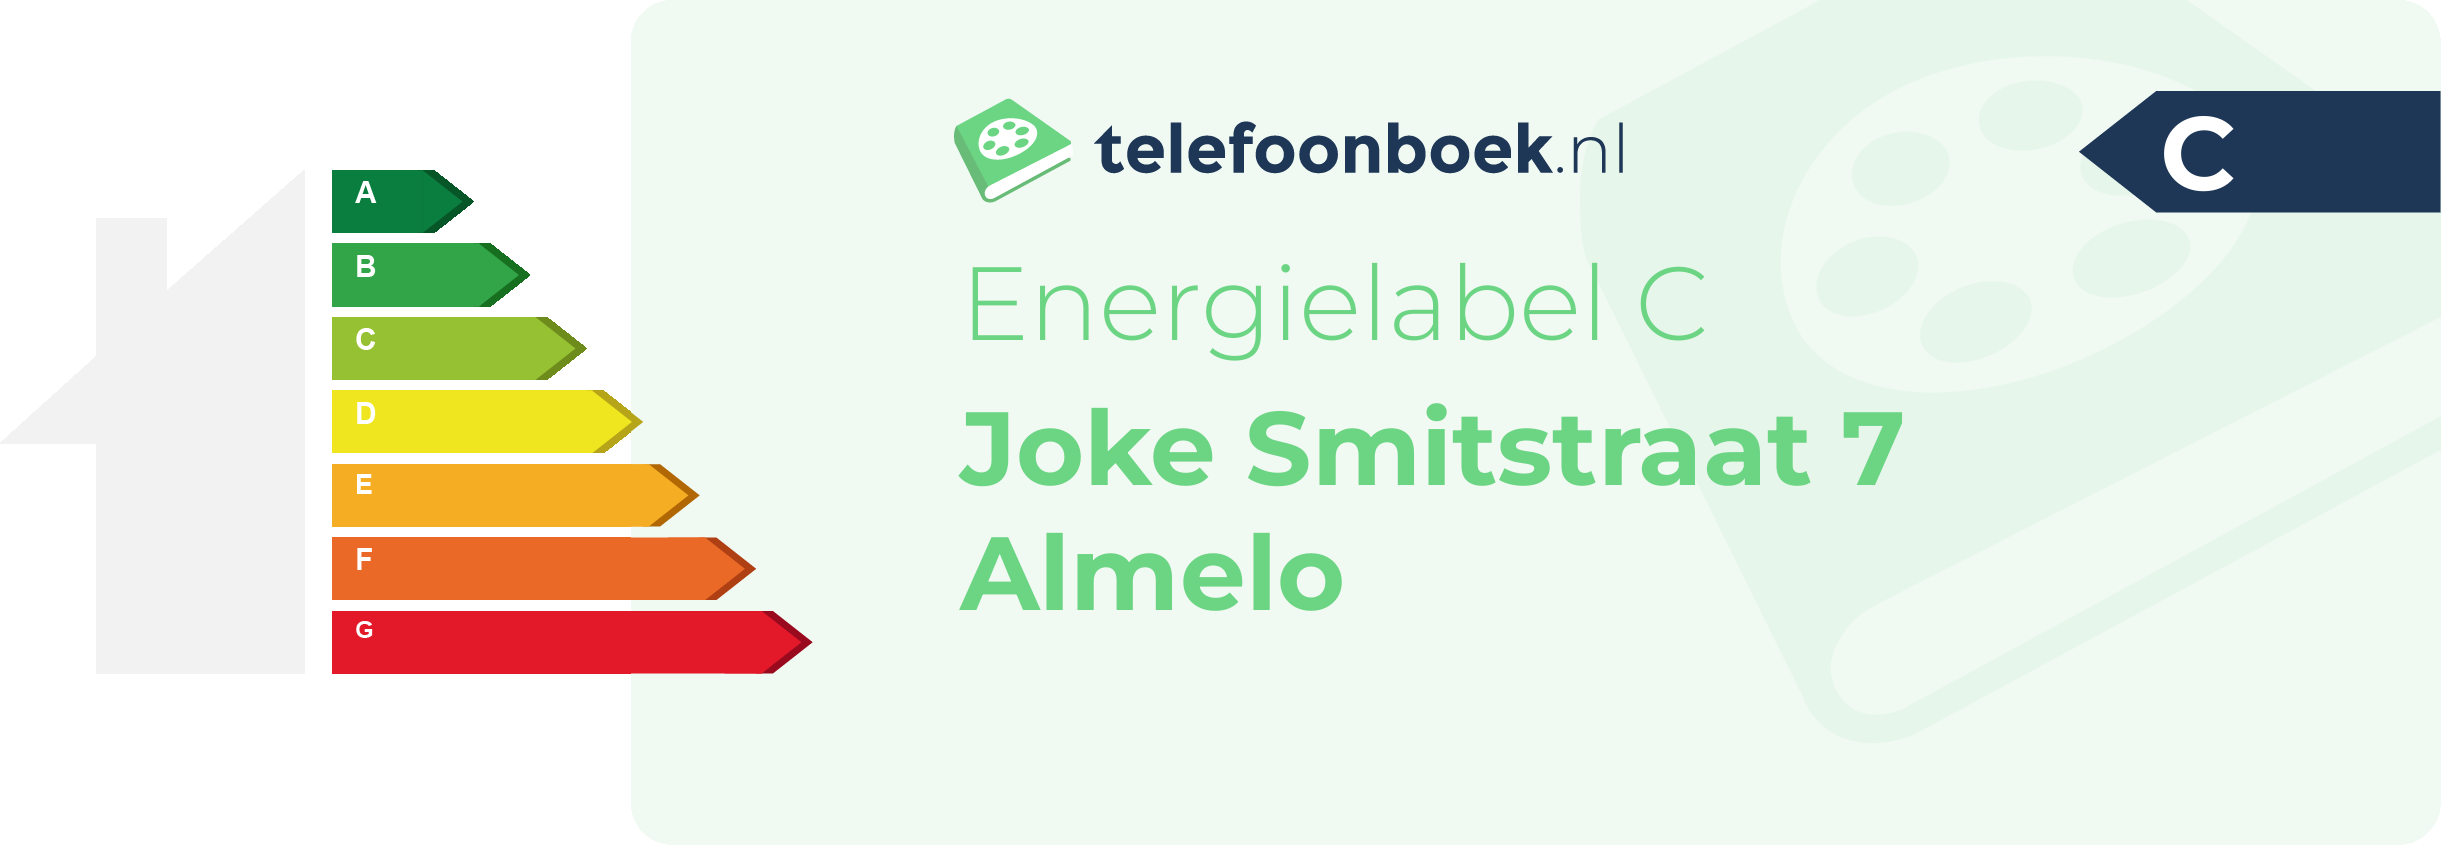 Energielabel Joke Smitstraat 7 Almelo